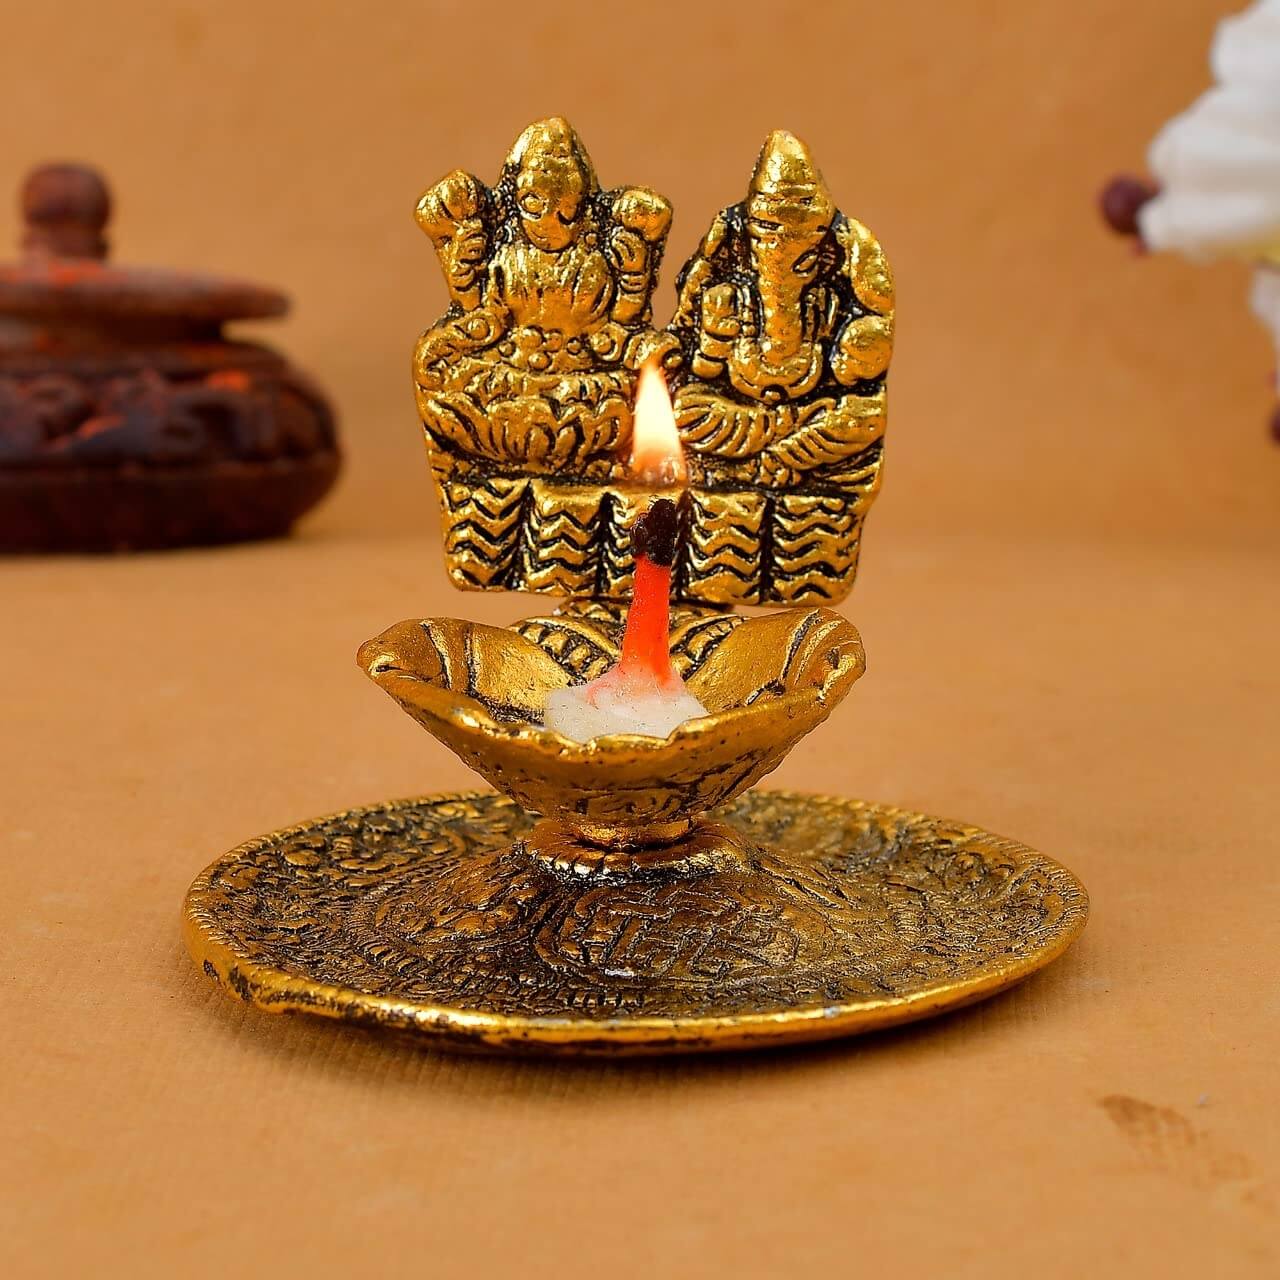 Metal Laxmi Ganesh Hand Diya Laxmi Ganesh Hand Diya with for Pooja Hand Diya with for Pooja or as Puja Article Hath Diya Metal Laxmi Ganesh Hand Diya with for Pooja Laxmi Ganesh Hand Diya Metal Statues